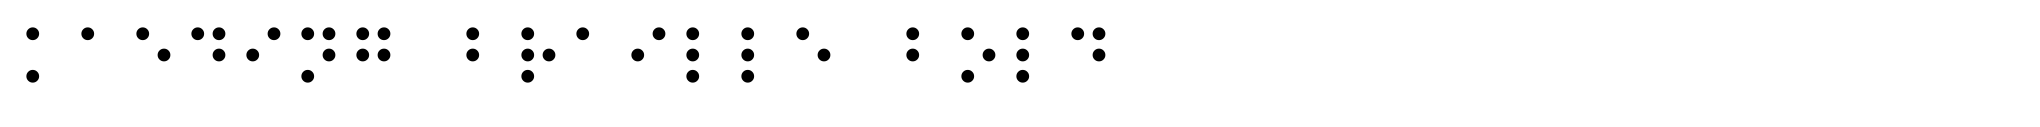 Kaeding Braille Bold image